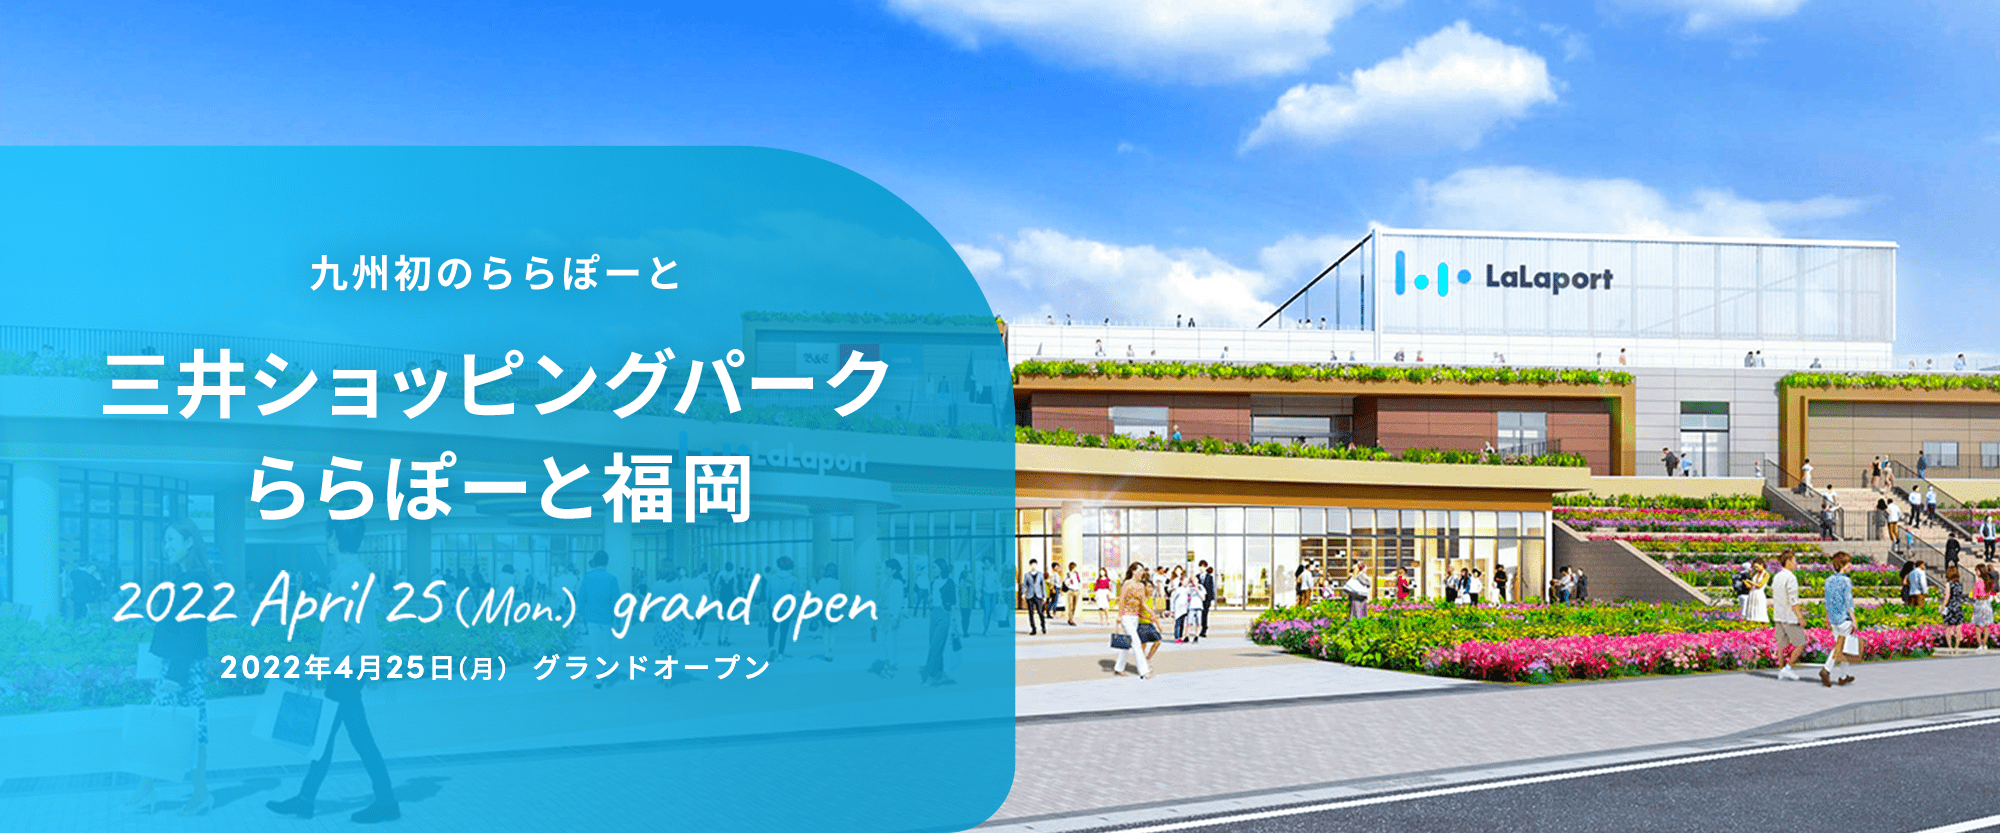 九州初のららぽーと 三井ショッピングパークららぽーと福岡 2022年春(予定)グランドオープン